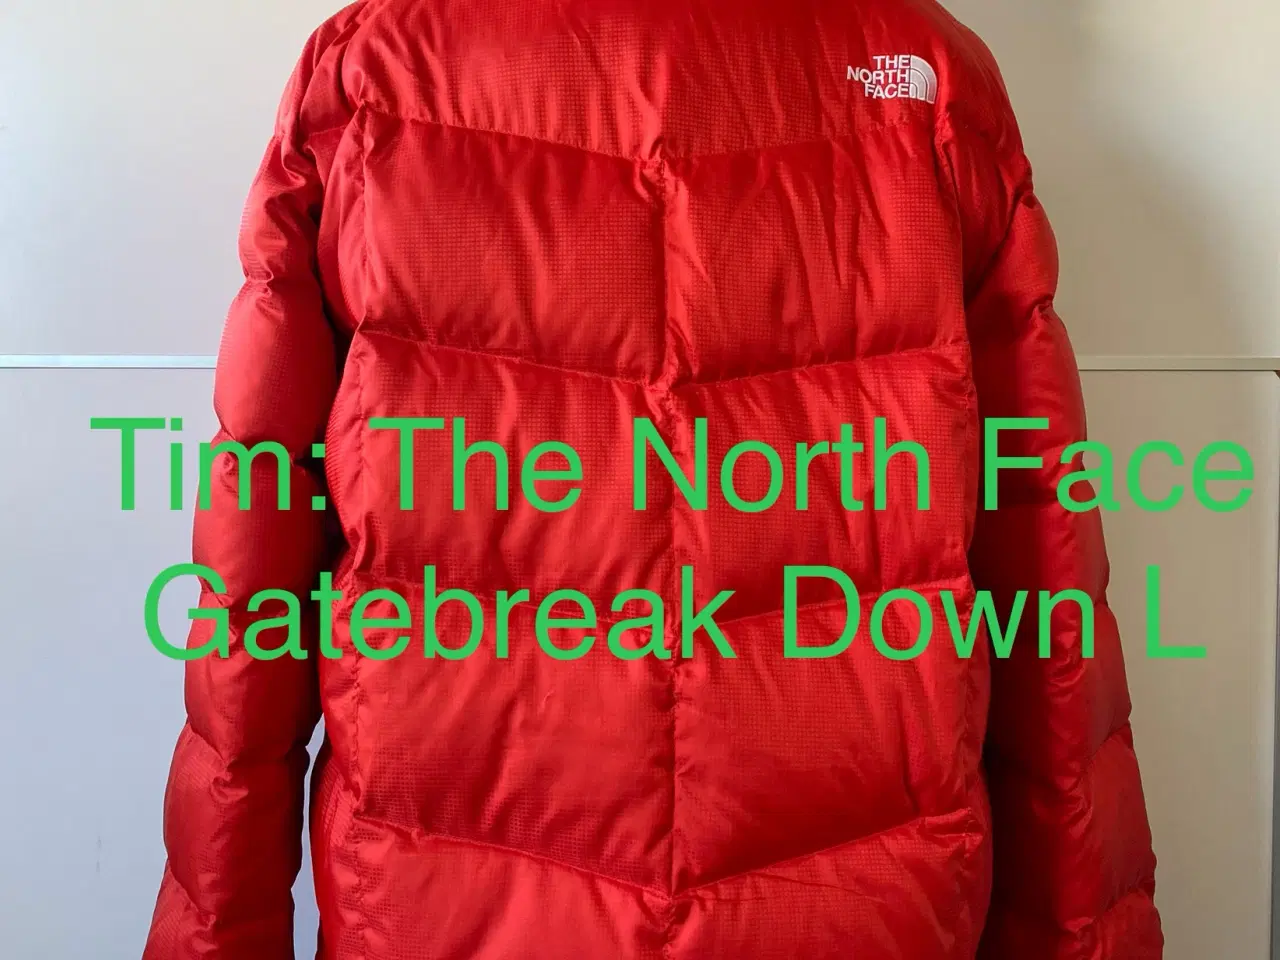 Billede 3 - The North Face Gatebreak Down L 